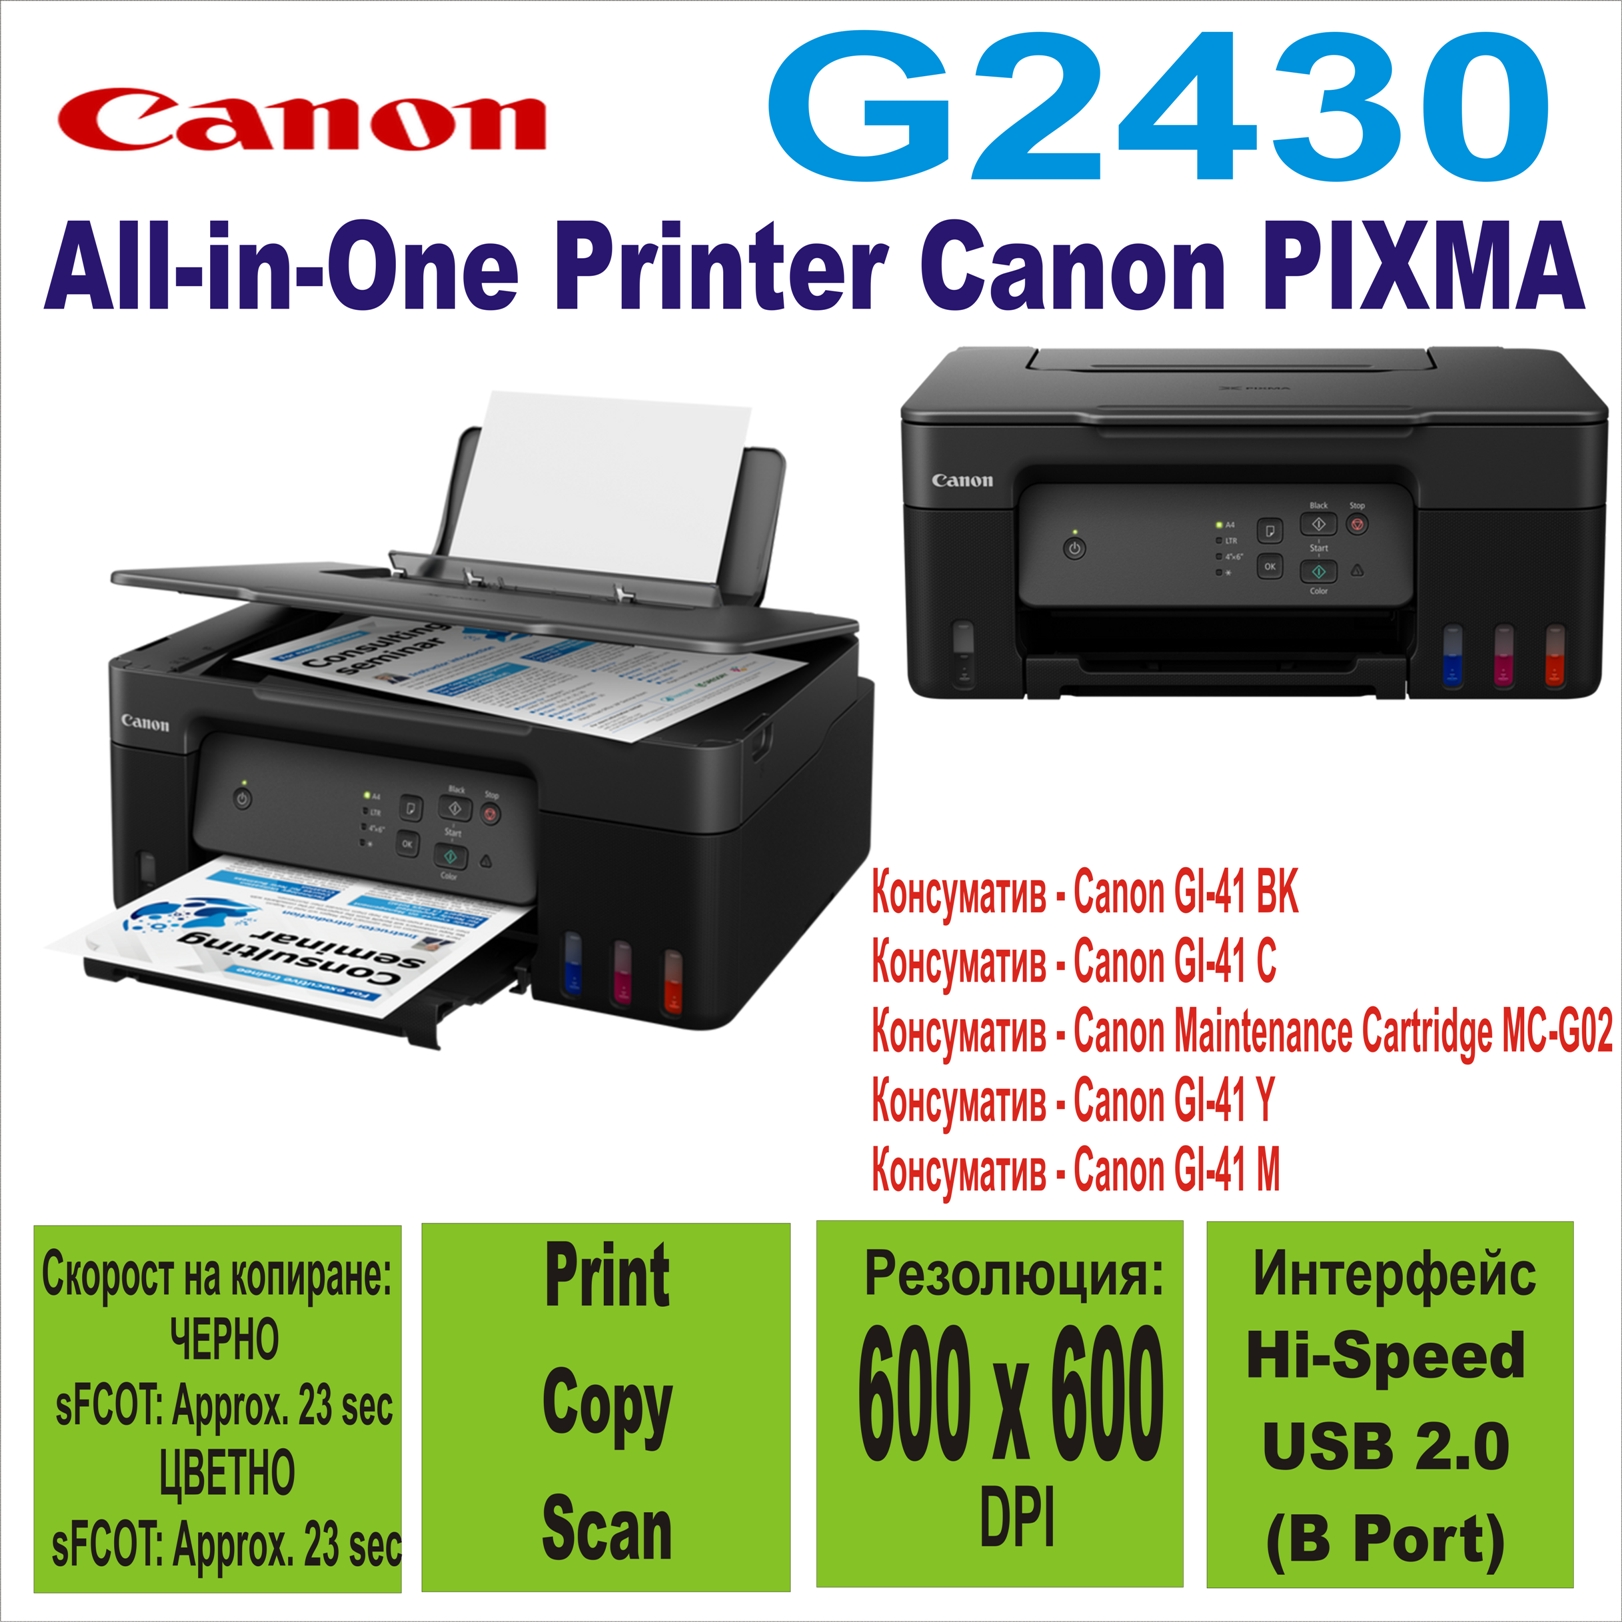 All-in-One Printer Canon PIXMA G2430